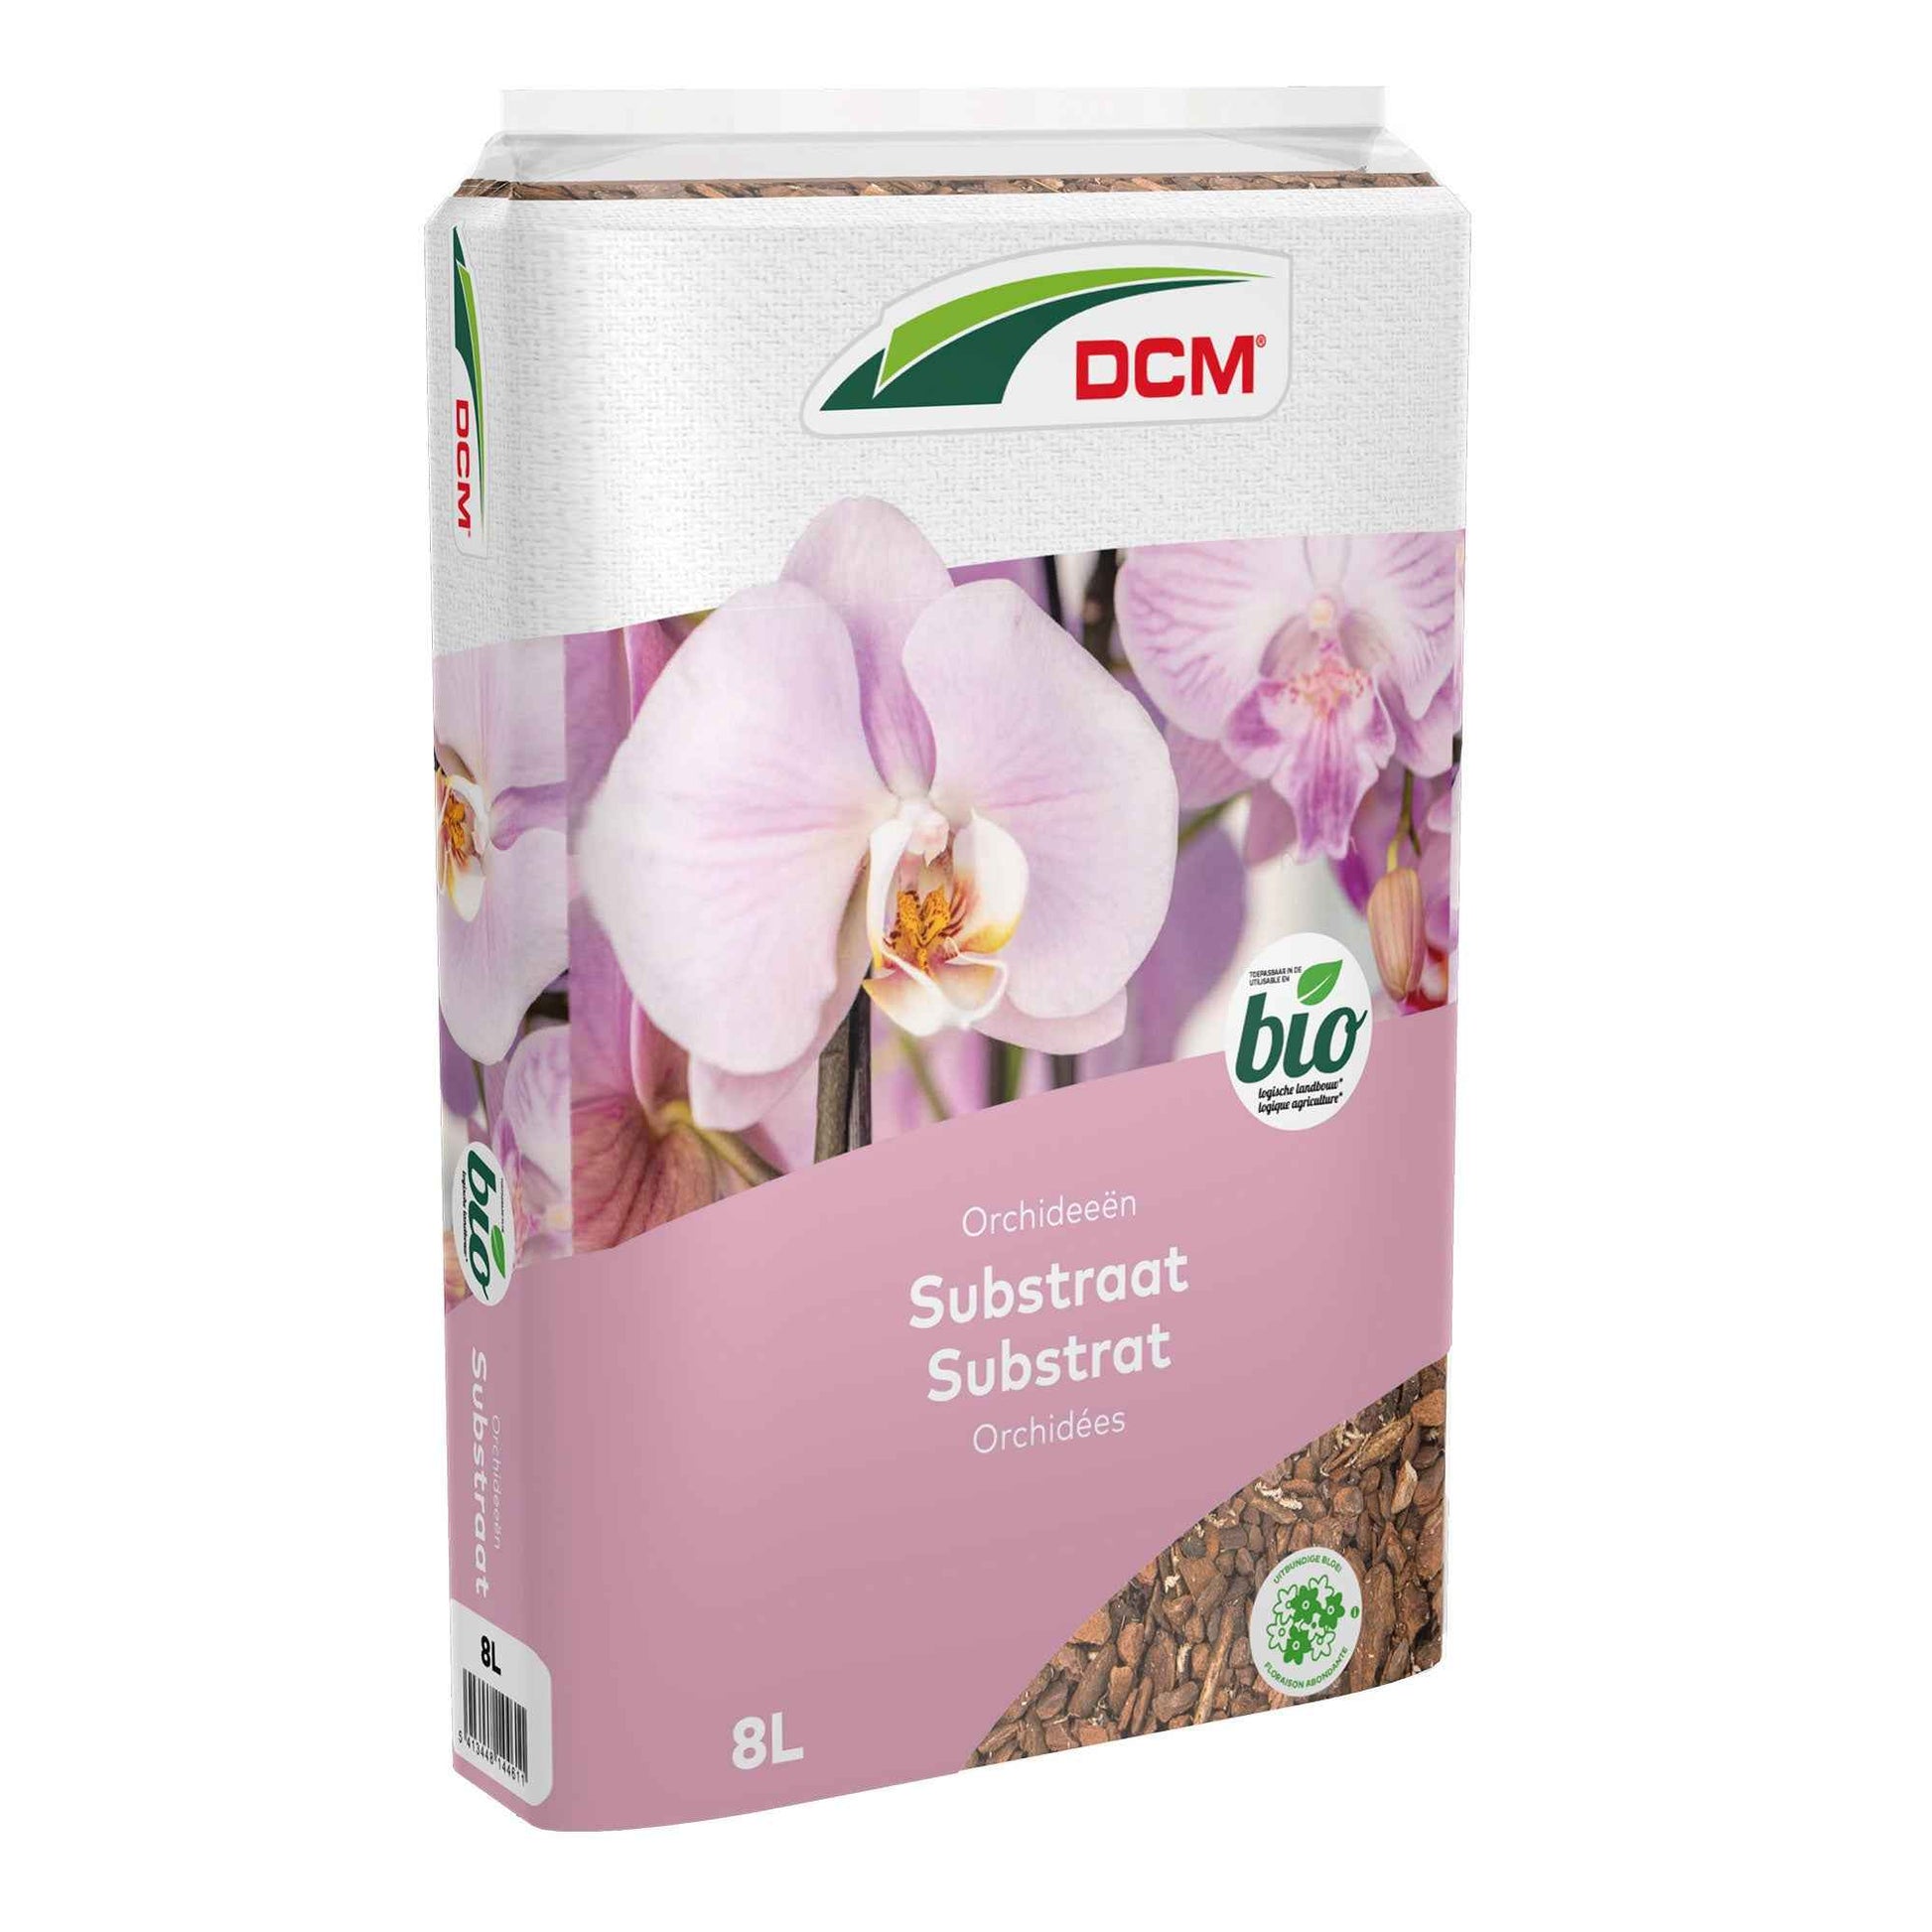 Orchideensubstrat - Biologisch 8 Liter - DCM - Biologische Pflanzennahrung